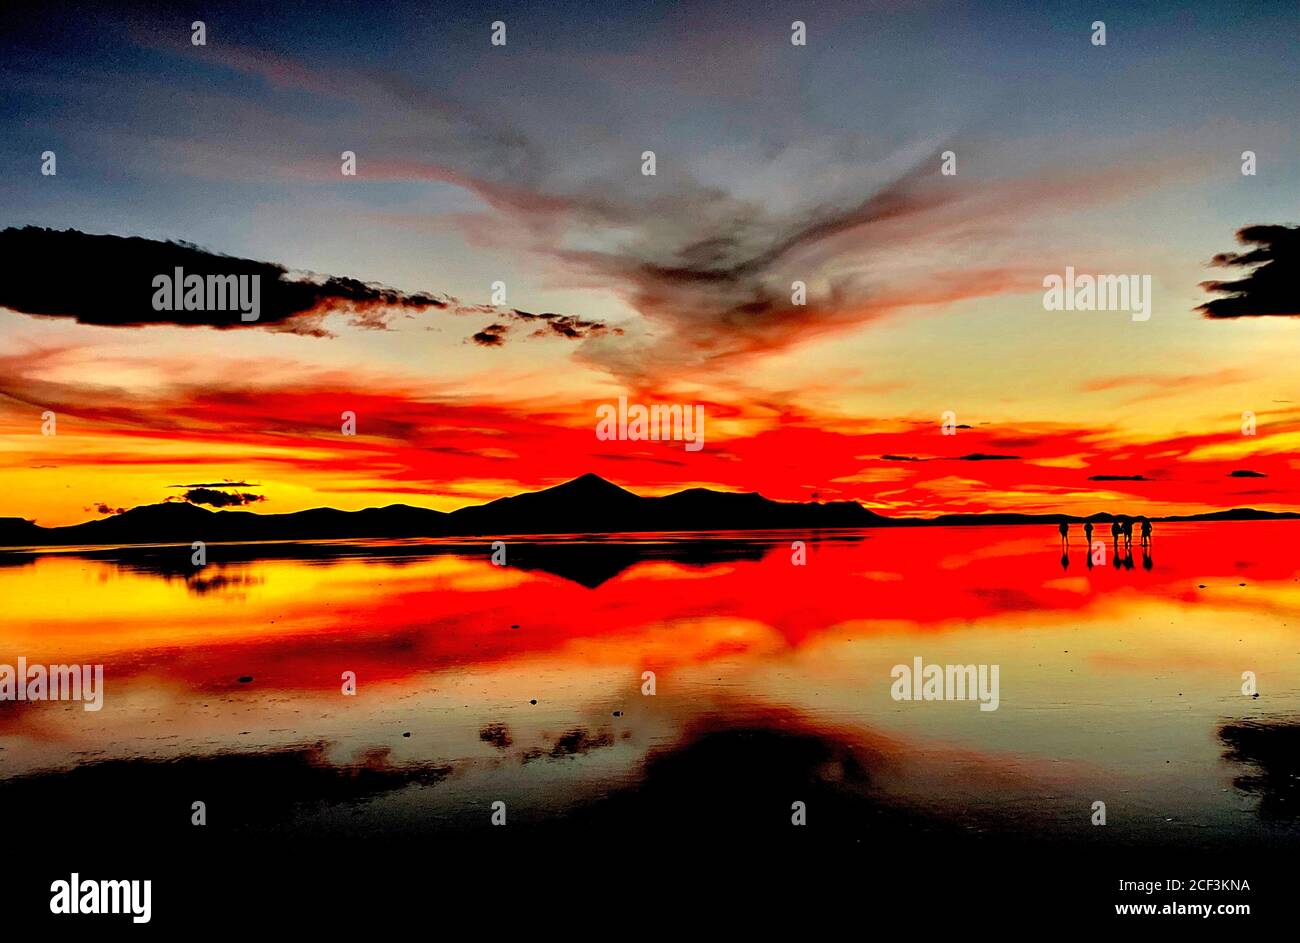 Schöner roter Sonnenuntergang über Salzebenen in Salar de Uyuni, Bolivien. Dramatische Sonnenuntergangs-Himmel-Szene. Reflexion im Wasser des Sees. Dunkle Silhouetten von Menschen. Stockfoto